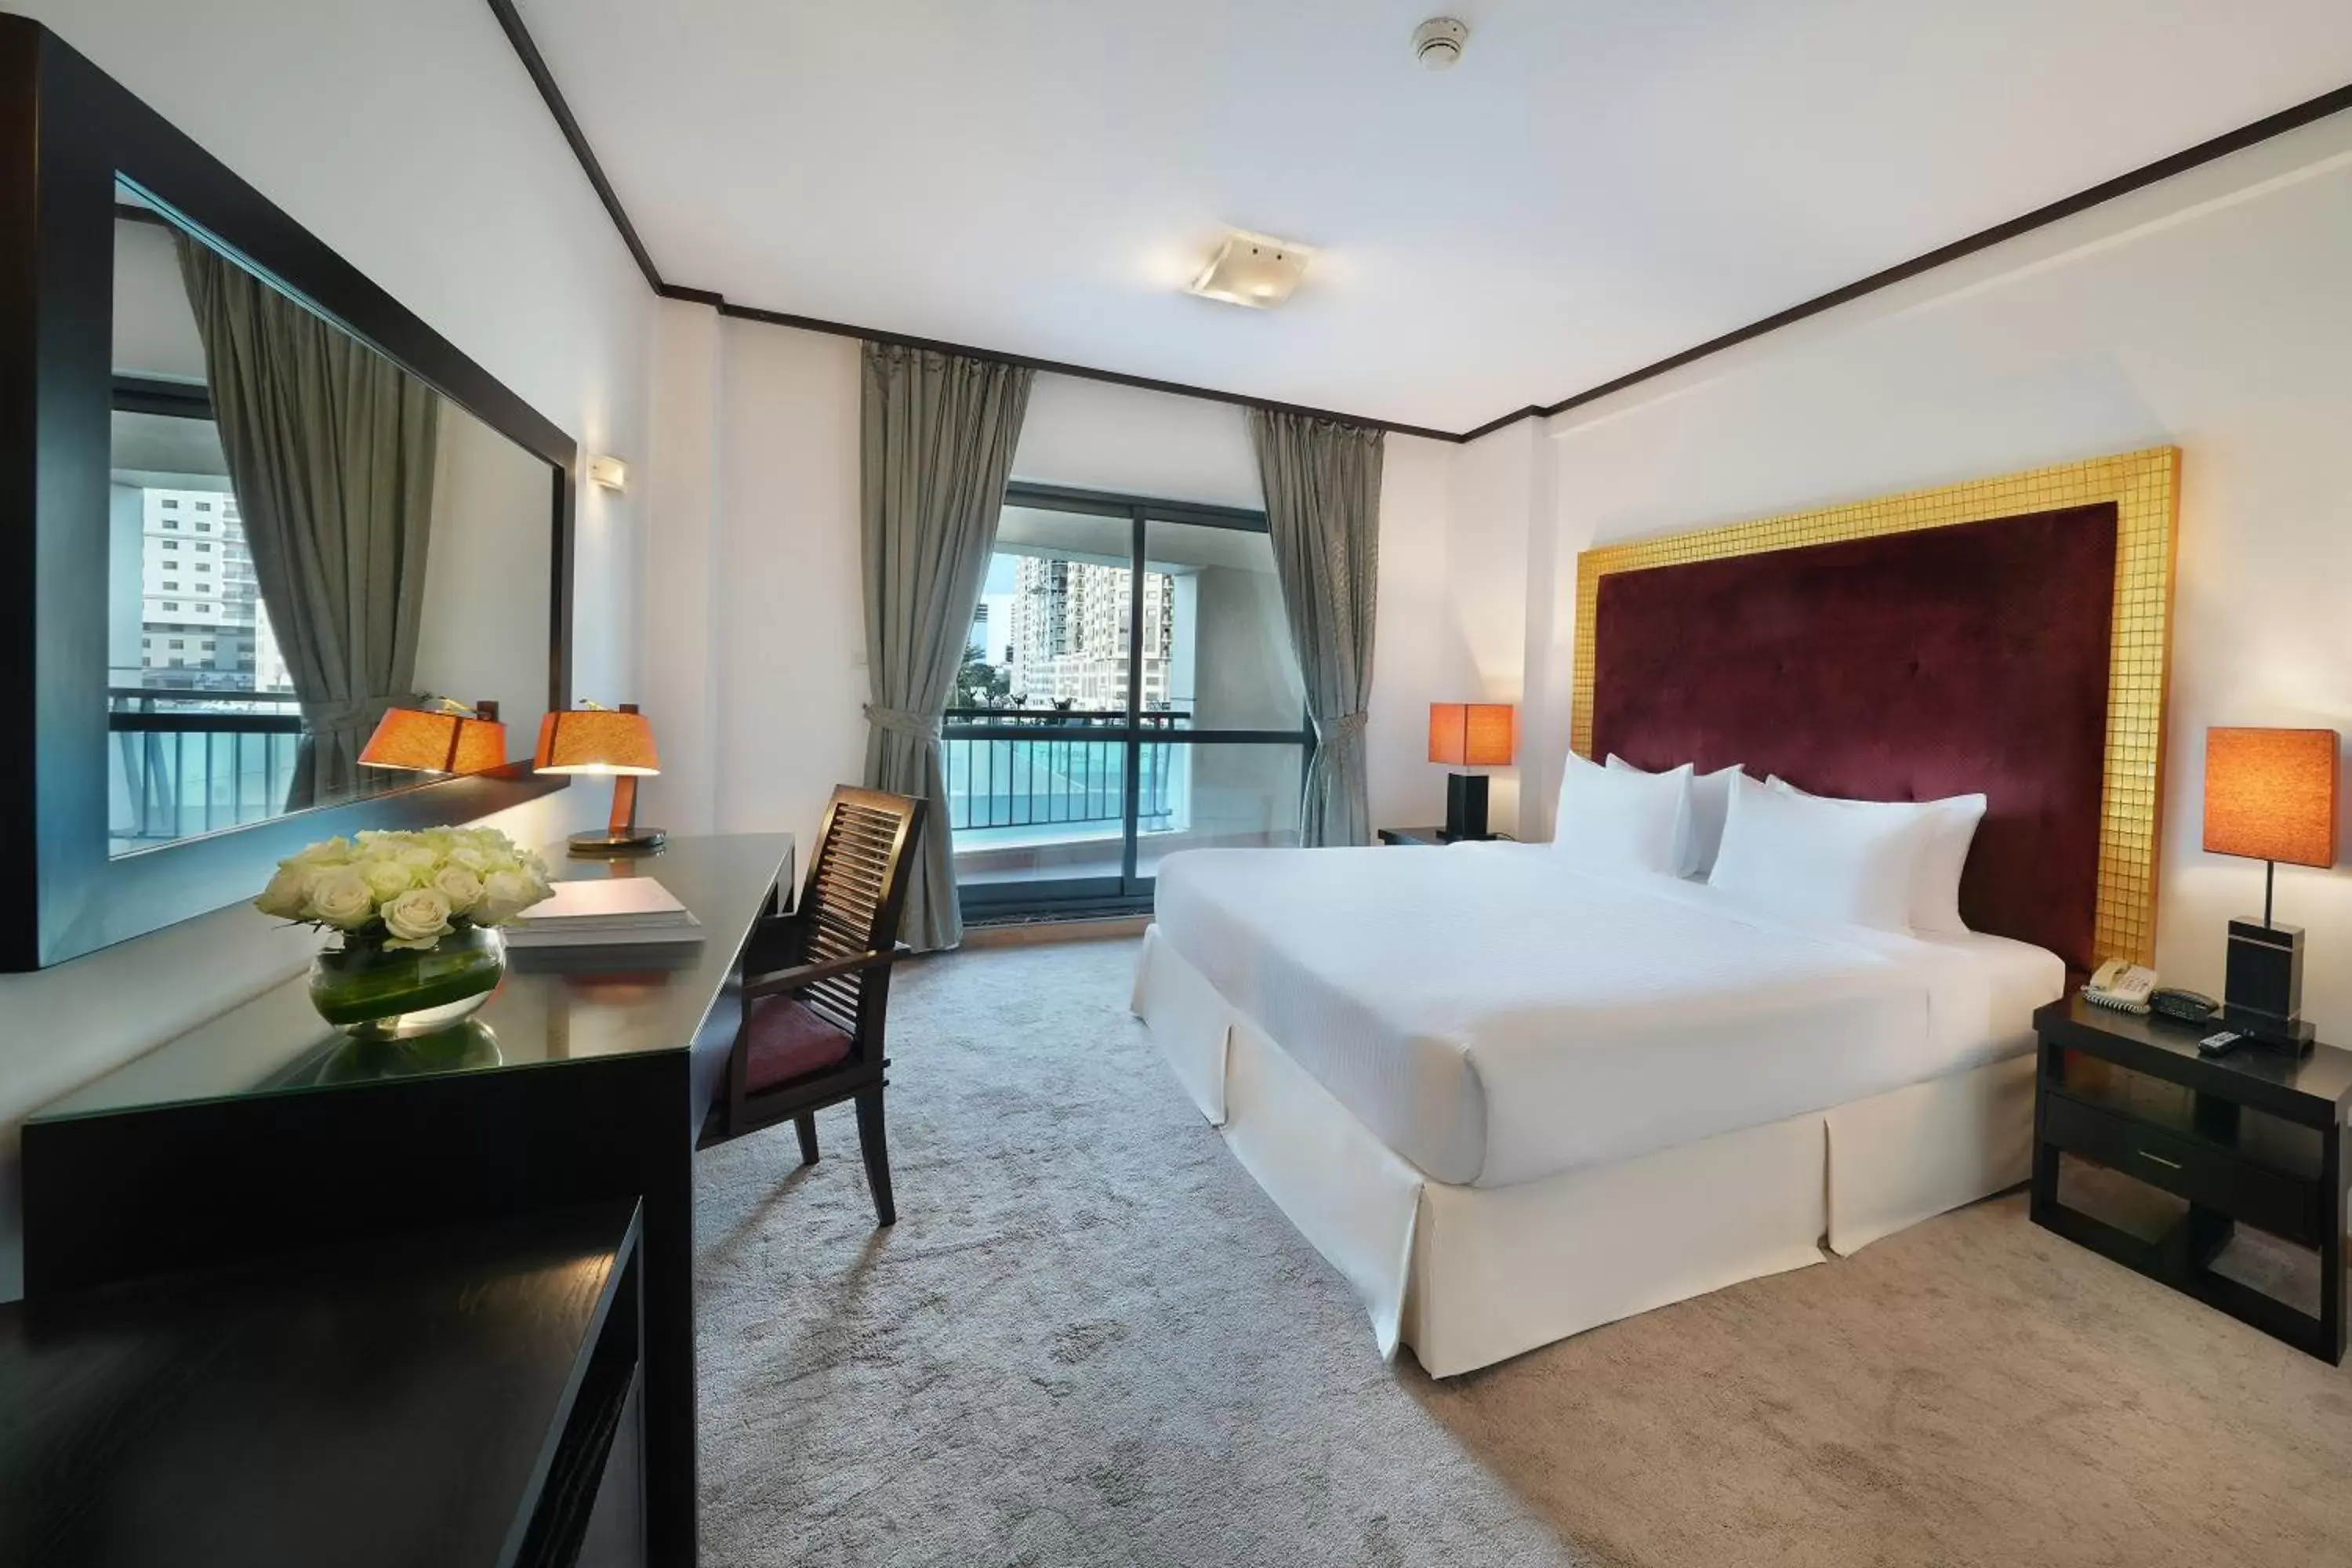 Bedroom in Park Apartments Dubai, an Edge By Rotana Hotel